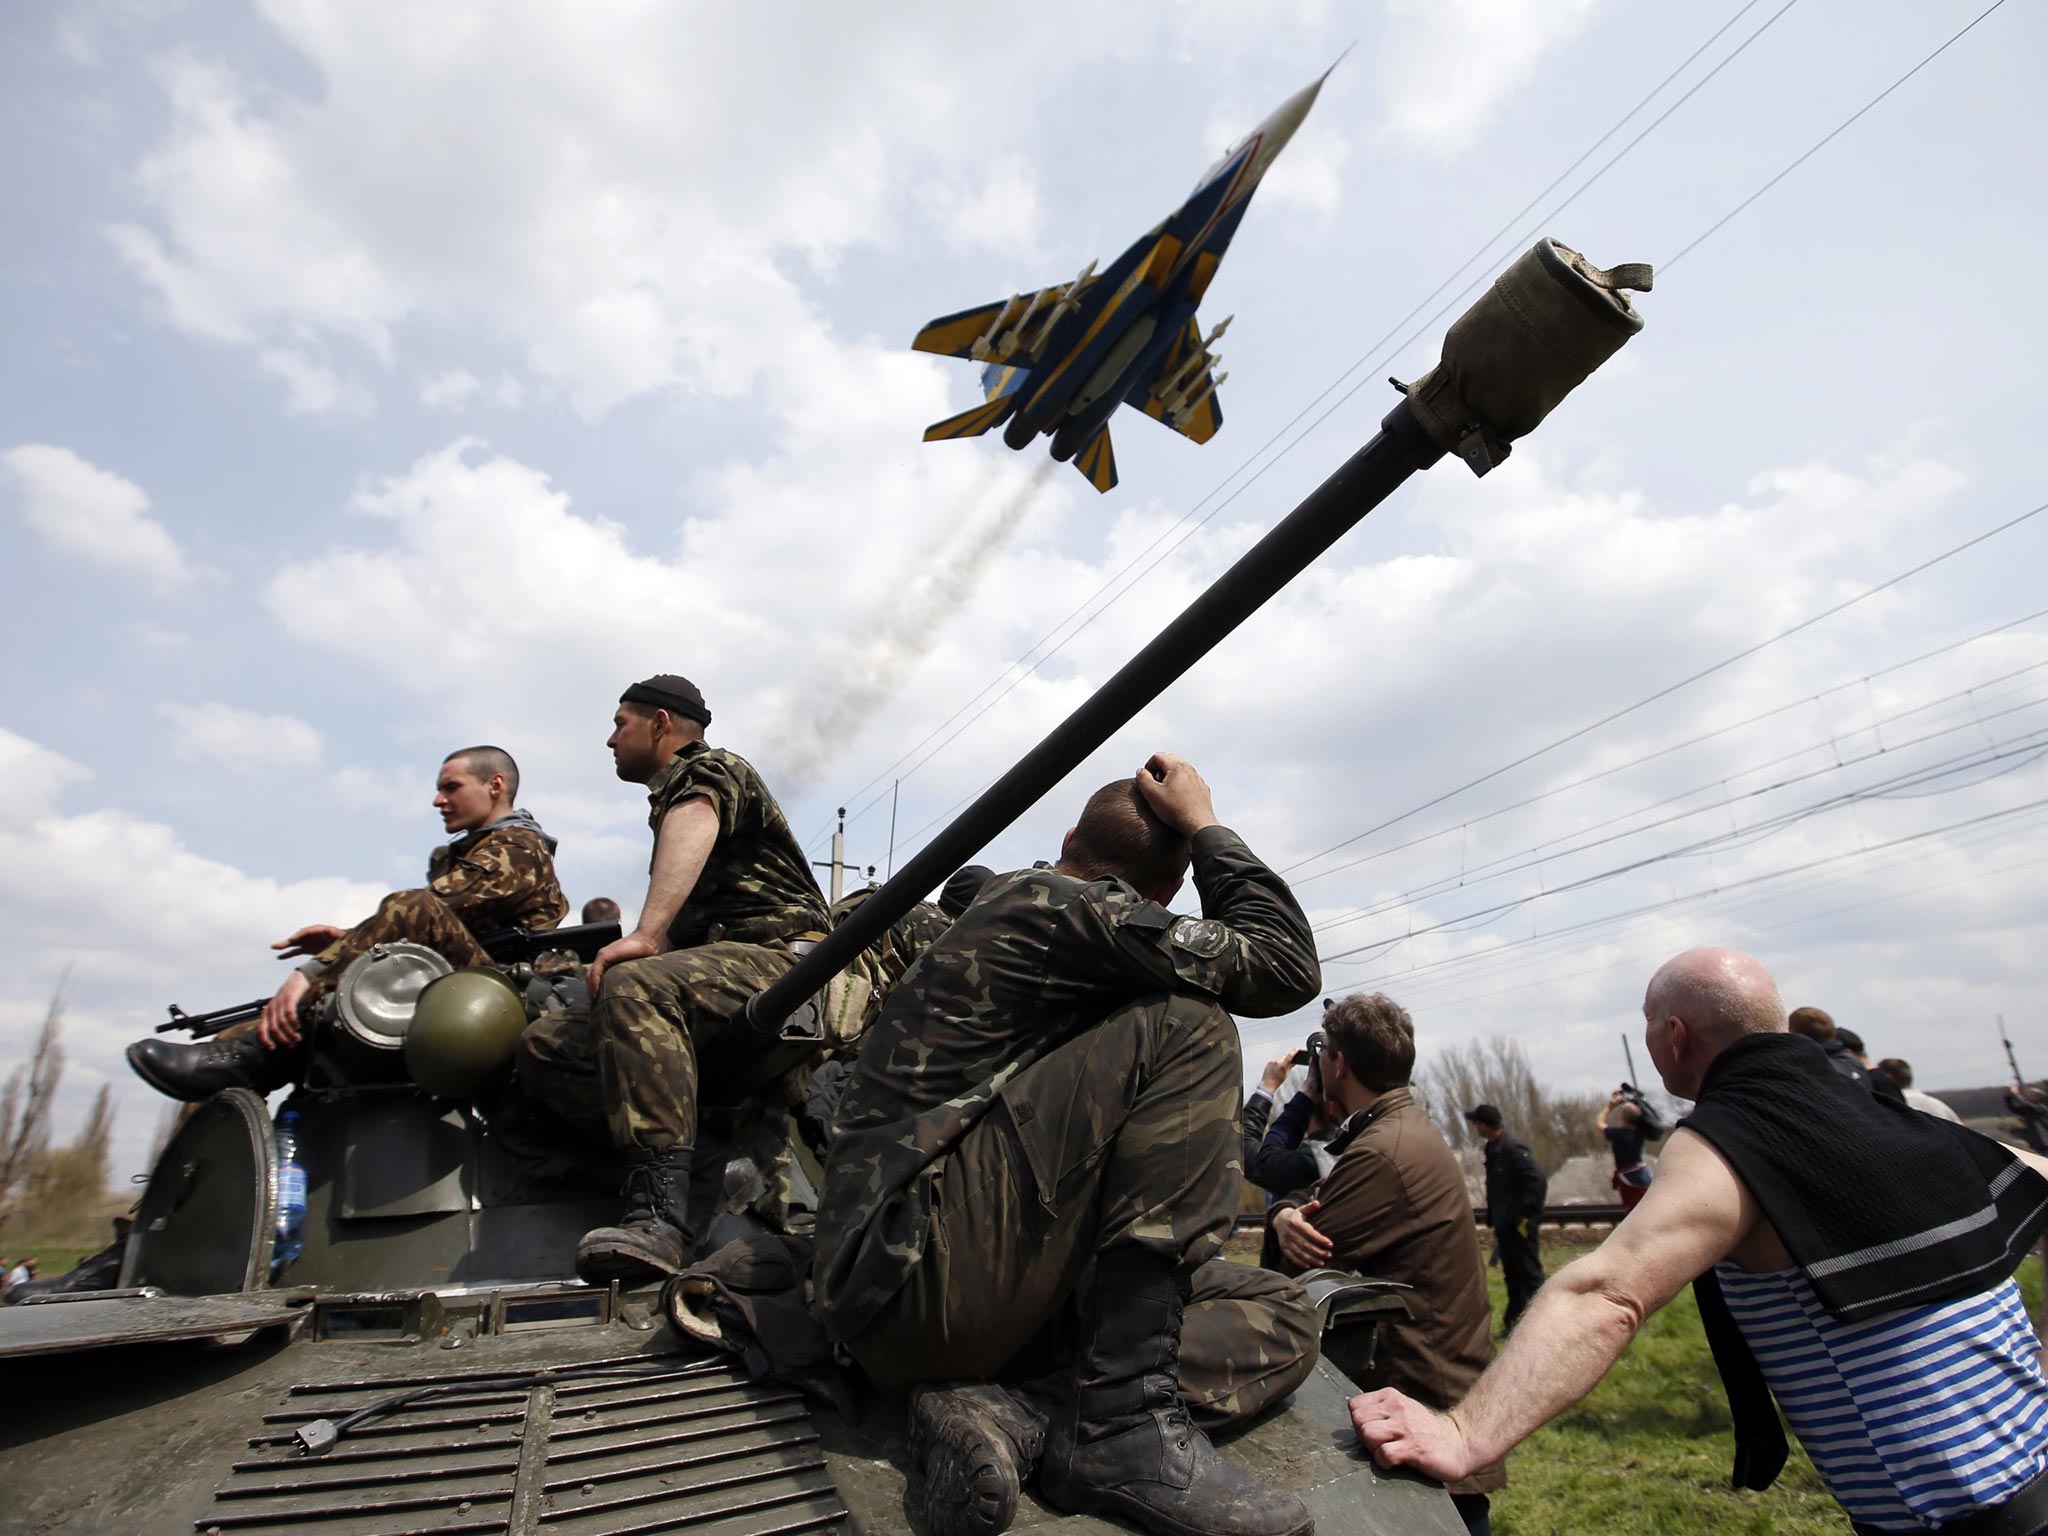 A Ukrainian jet shot down over Luhansk